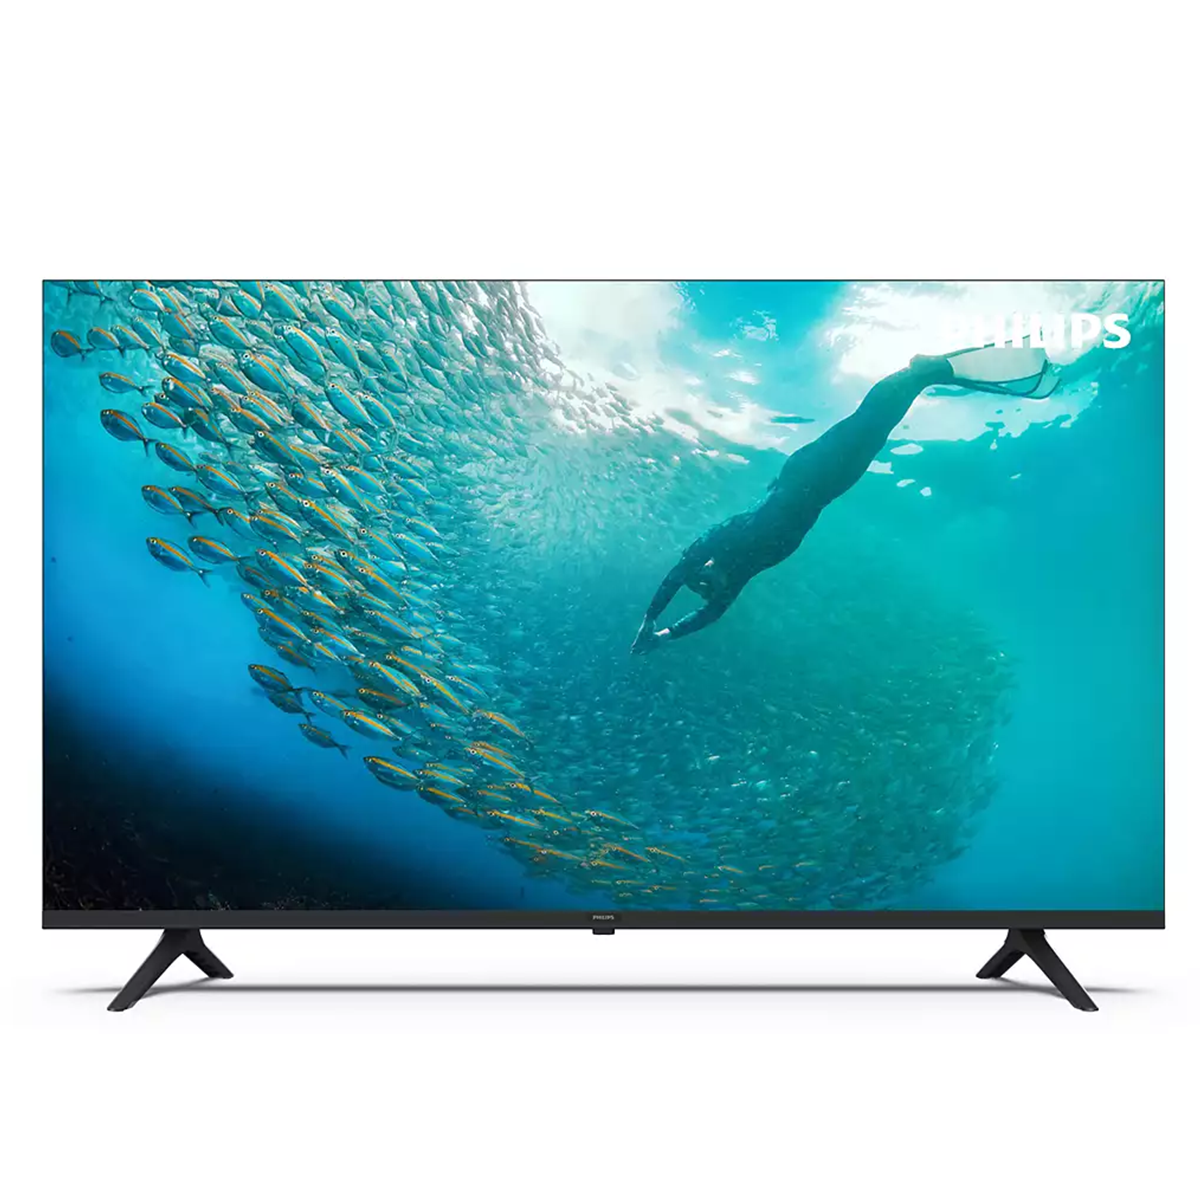 4K UHD LED TITAN OS Smart TV 65PUS7009/12 slika proizvoda Front View L